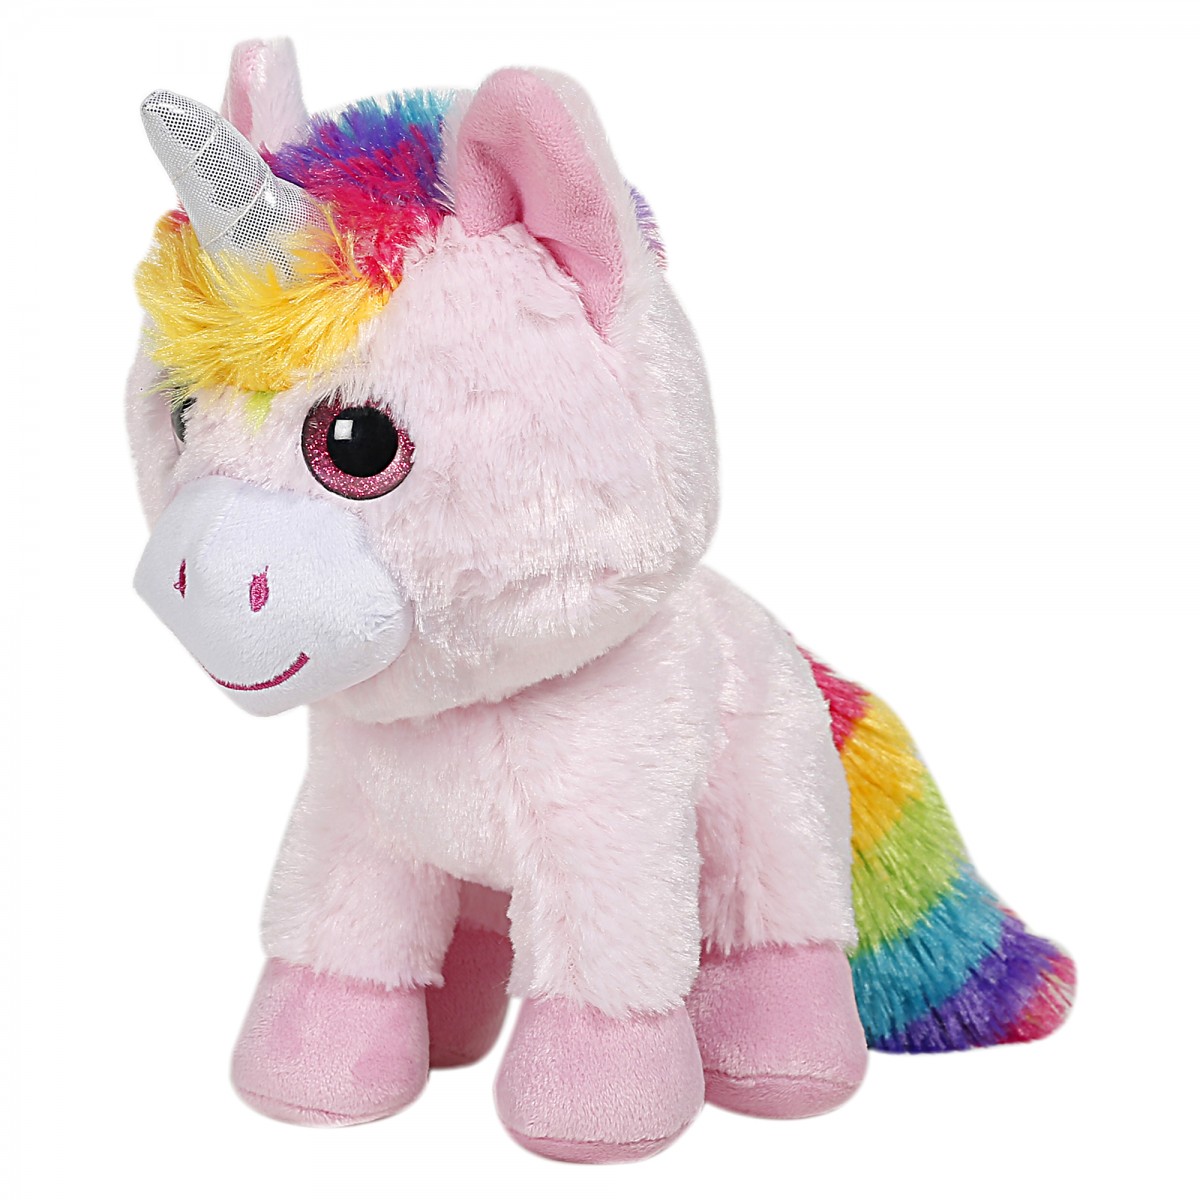 Fuzzbuzz Adorable Unicorn, Soft Toys for Kids, Pink, 0M+